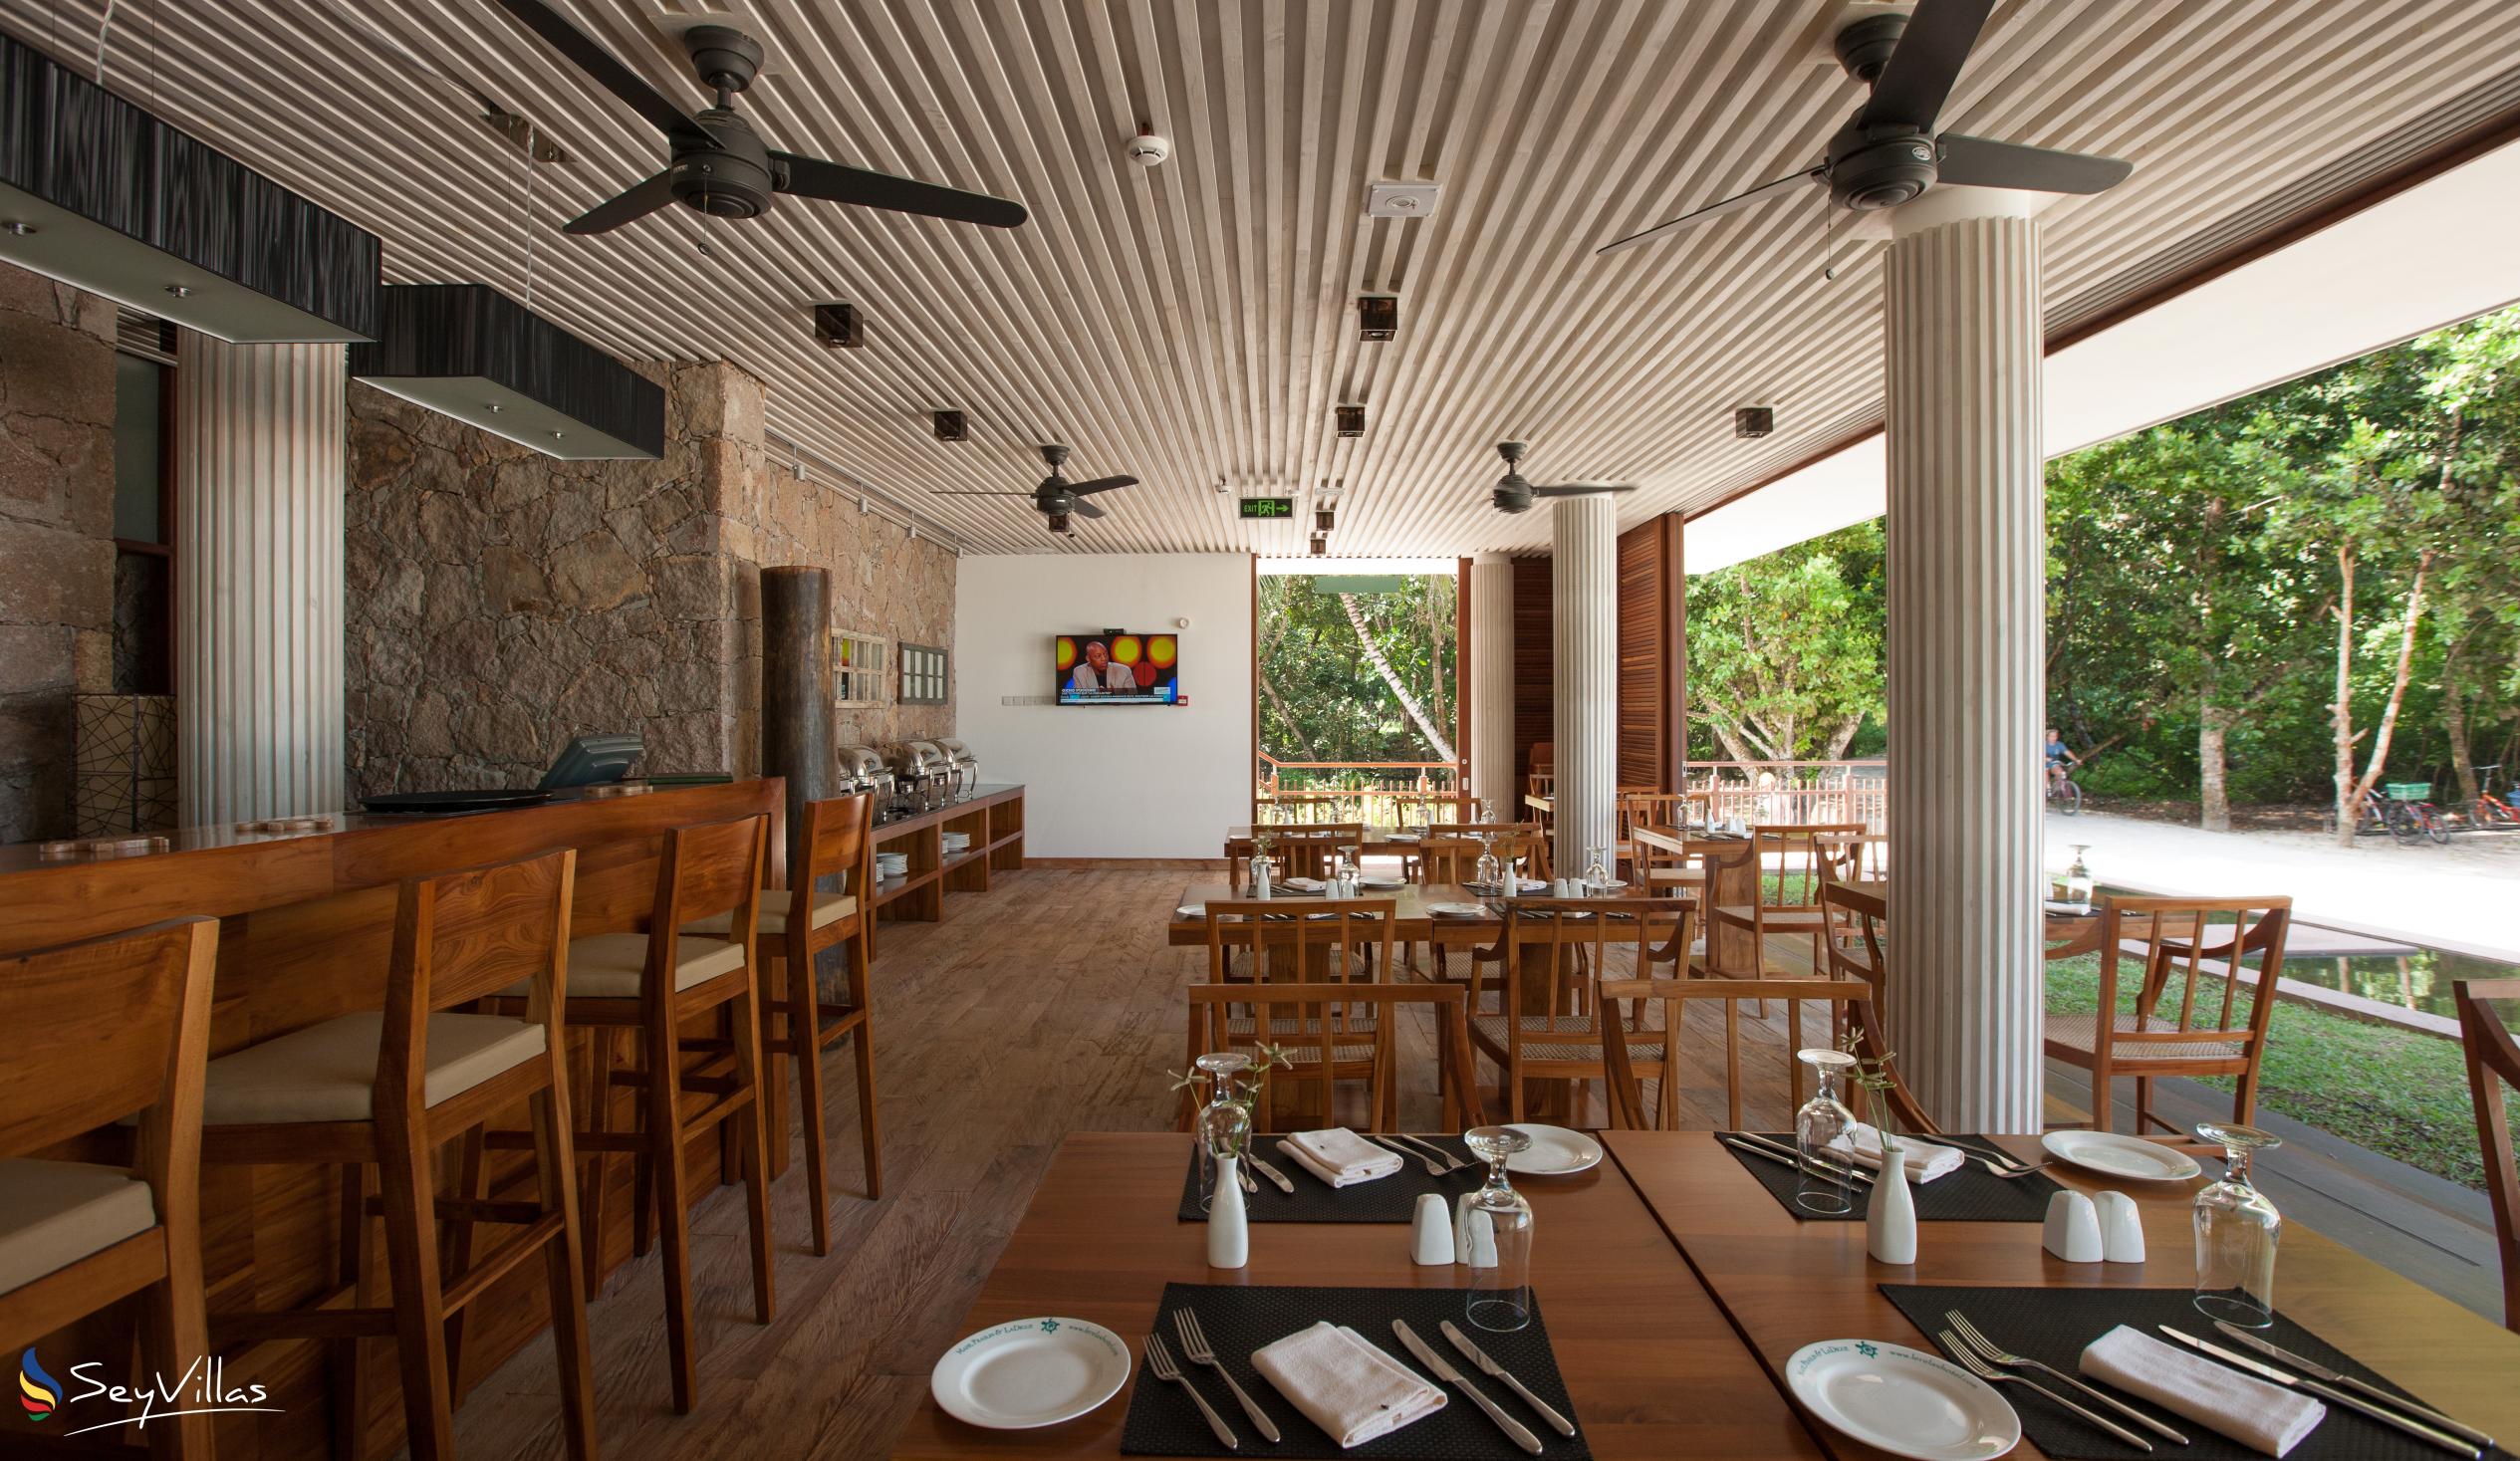 Foto 13: Le Relax Luxury Lodge - Innenbereich - La Digue (Seychellen)